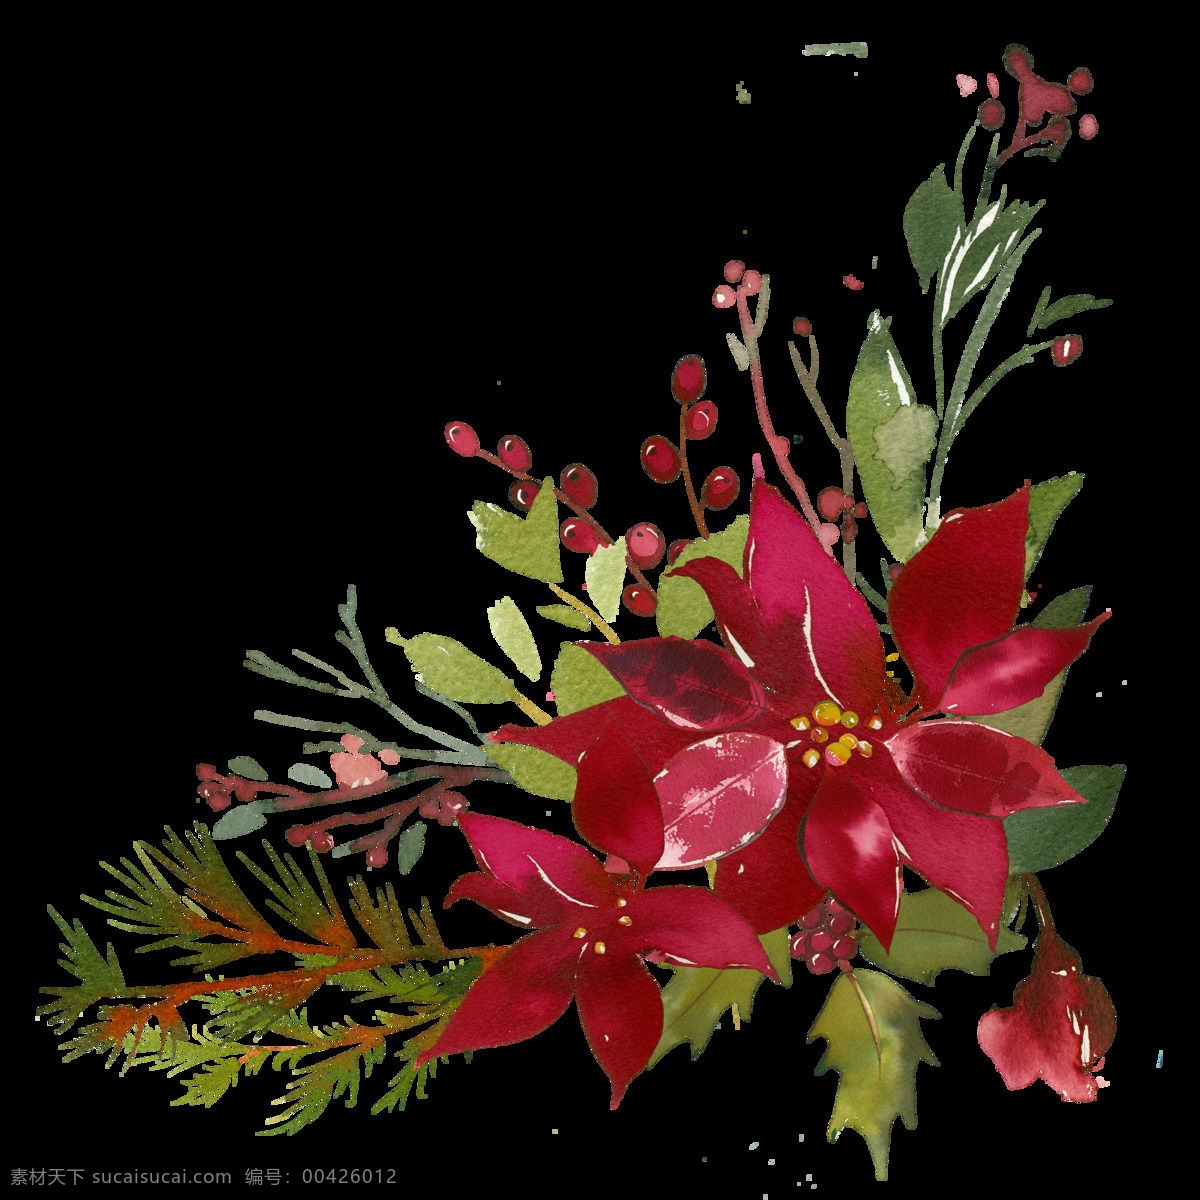 复古 装饰 花环 花圈 植物花朵 绿叶花朵 花环花圈 花纹边框 创意装饰图案 婚礼装饰 复古色调 复古装饰